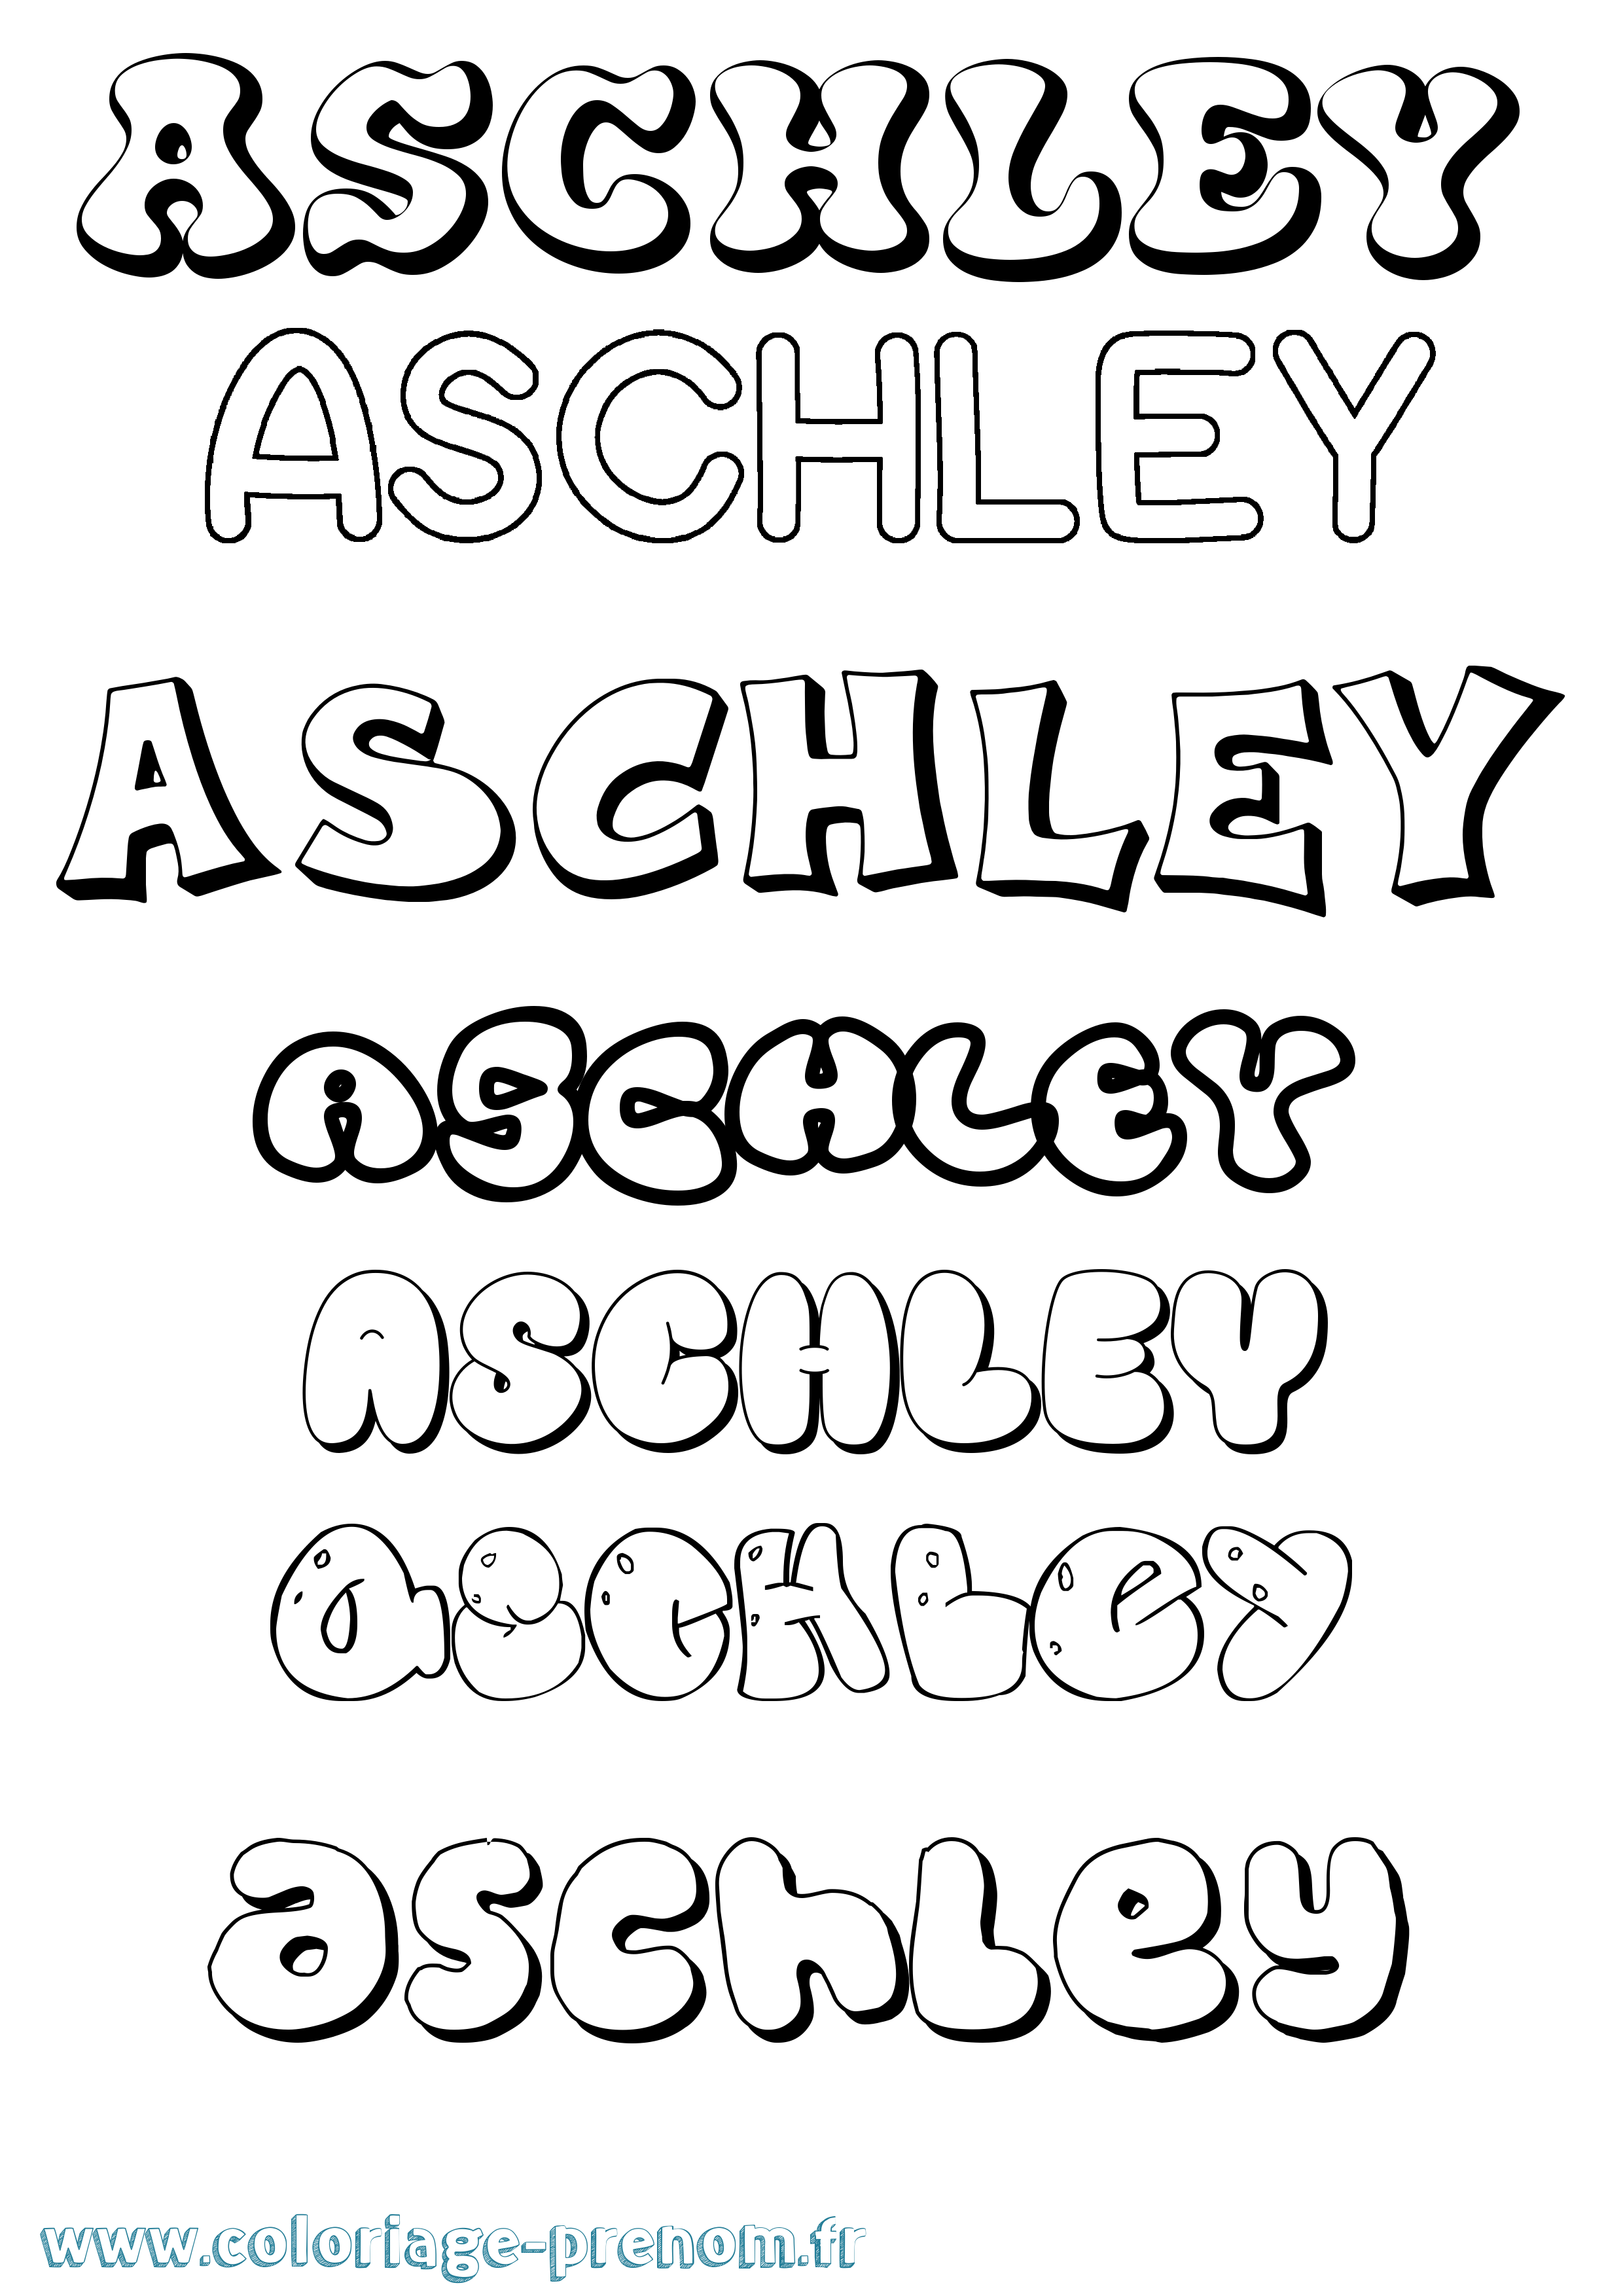 Coloriage prénom Aschley Bubble